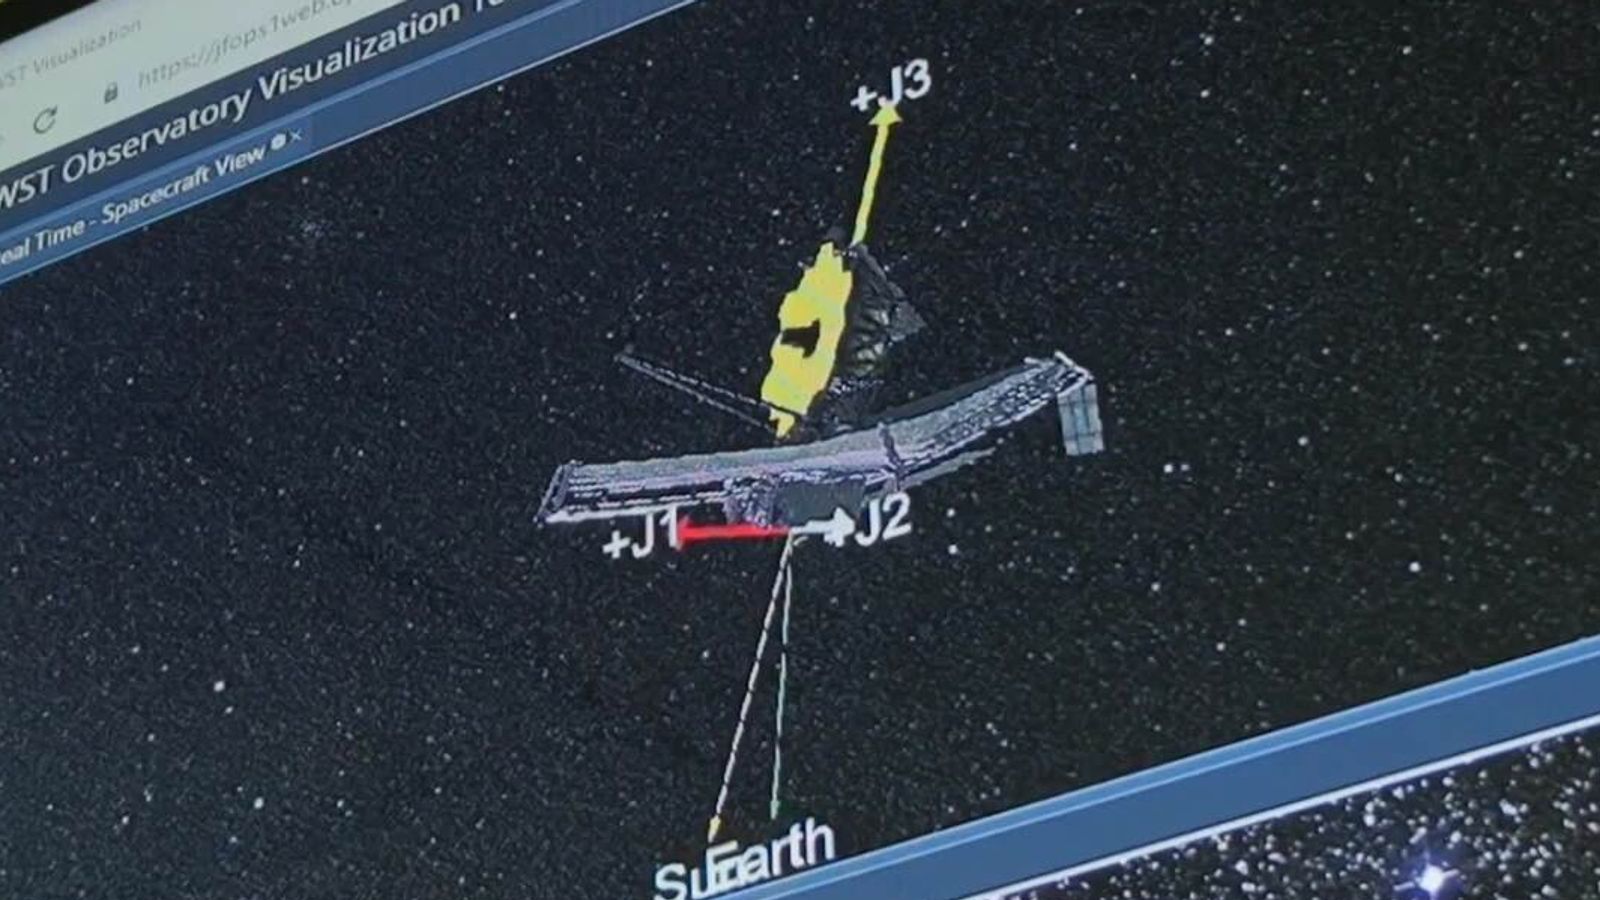 유성 충돌로 James Webb 우주 망원경에 “회복할 수 없는 심각한” 손상 발생 |  과학 기술 뉴스